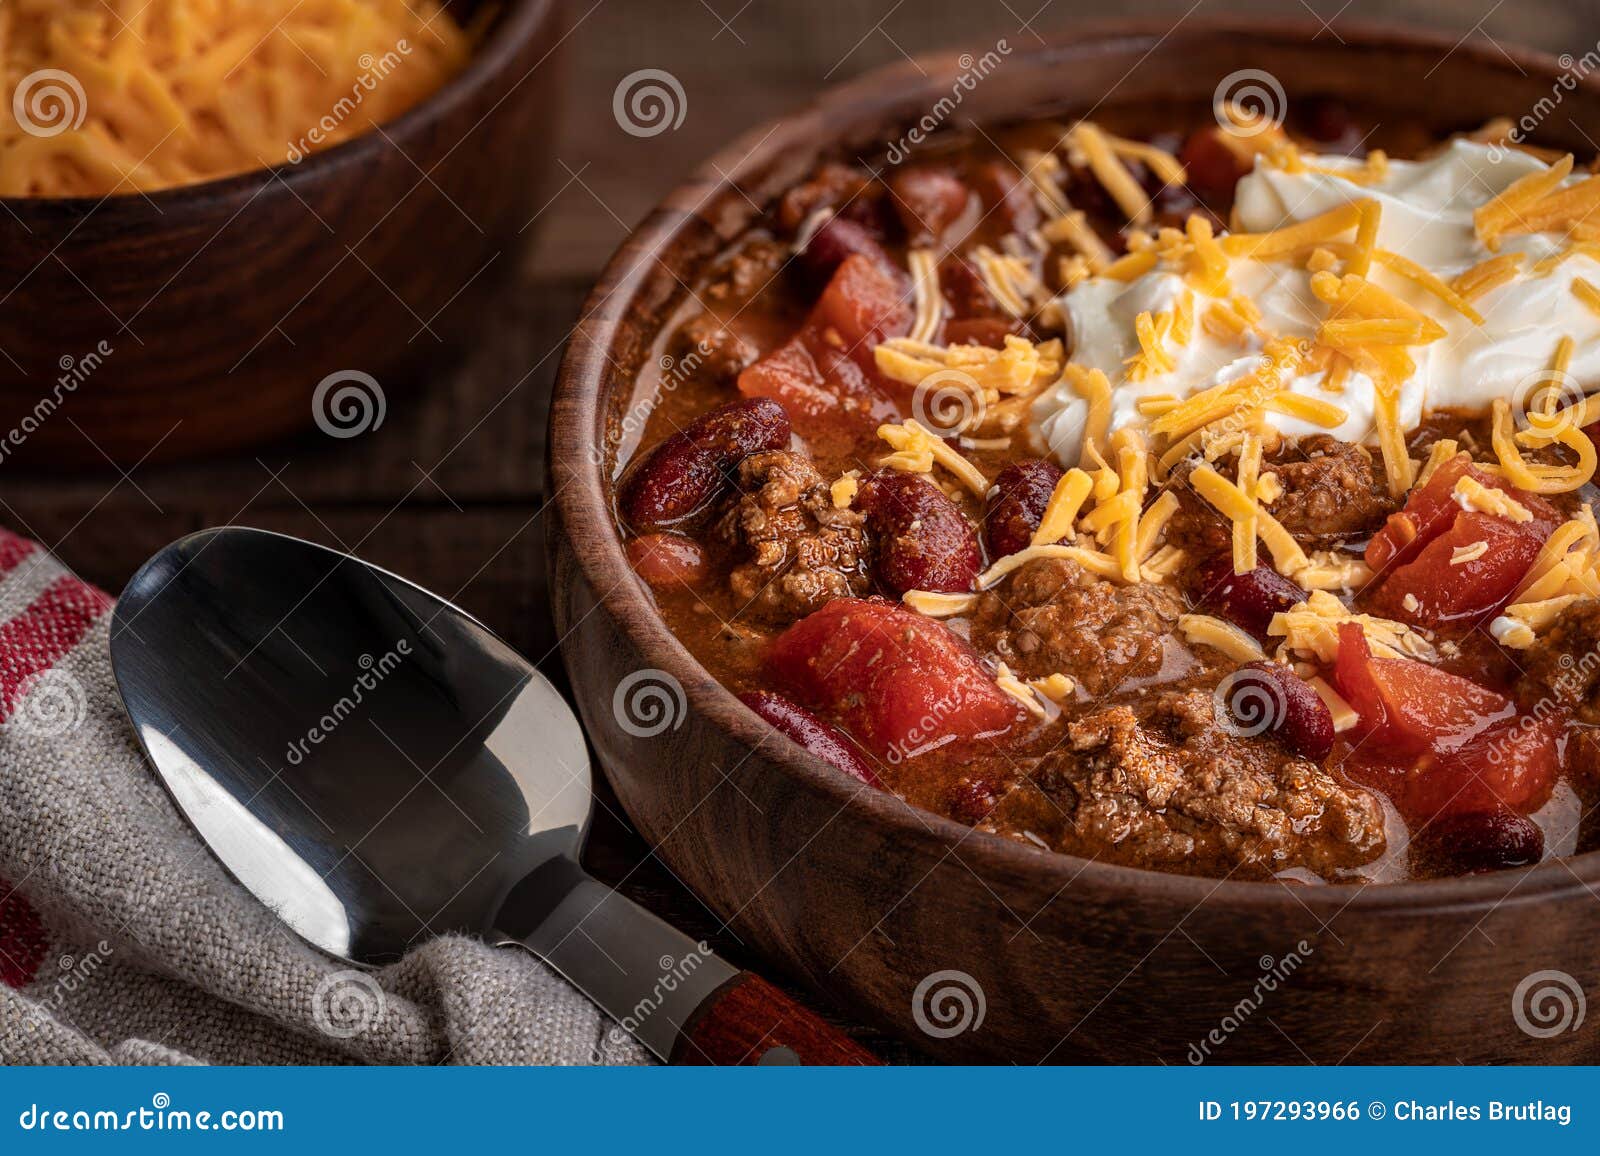 bowl of chili con carne